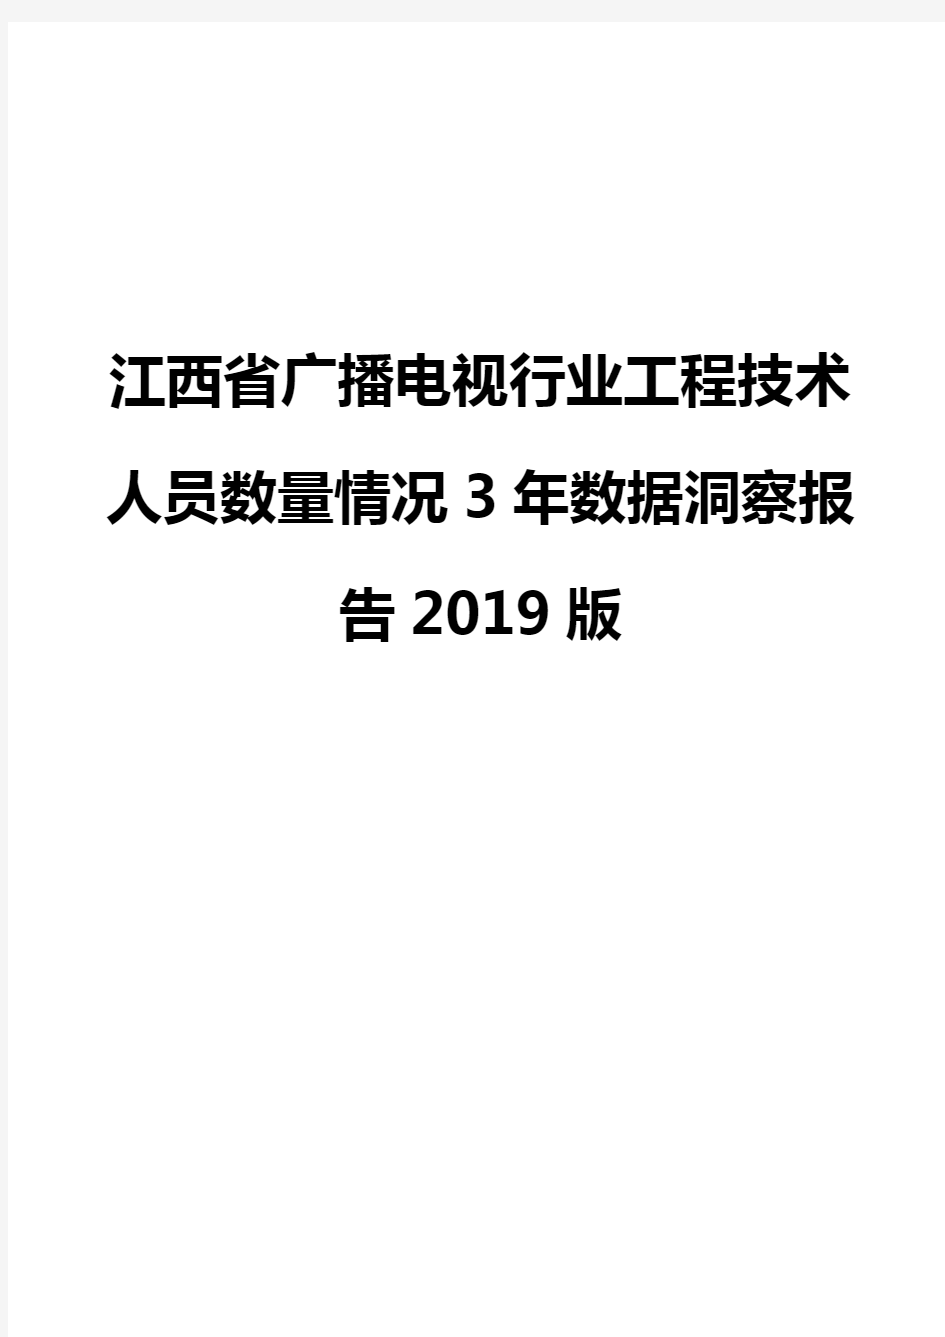 江西省广播电视行业工程技术人员数量情况3年数据洞察报告2019版